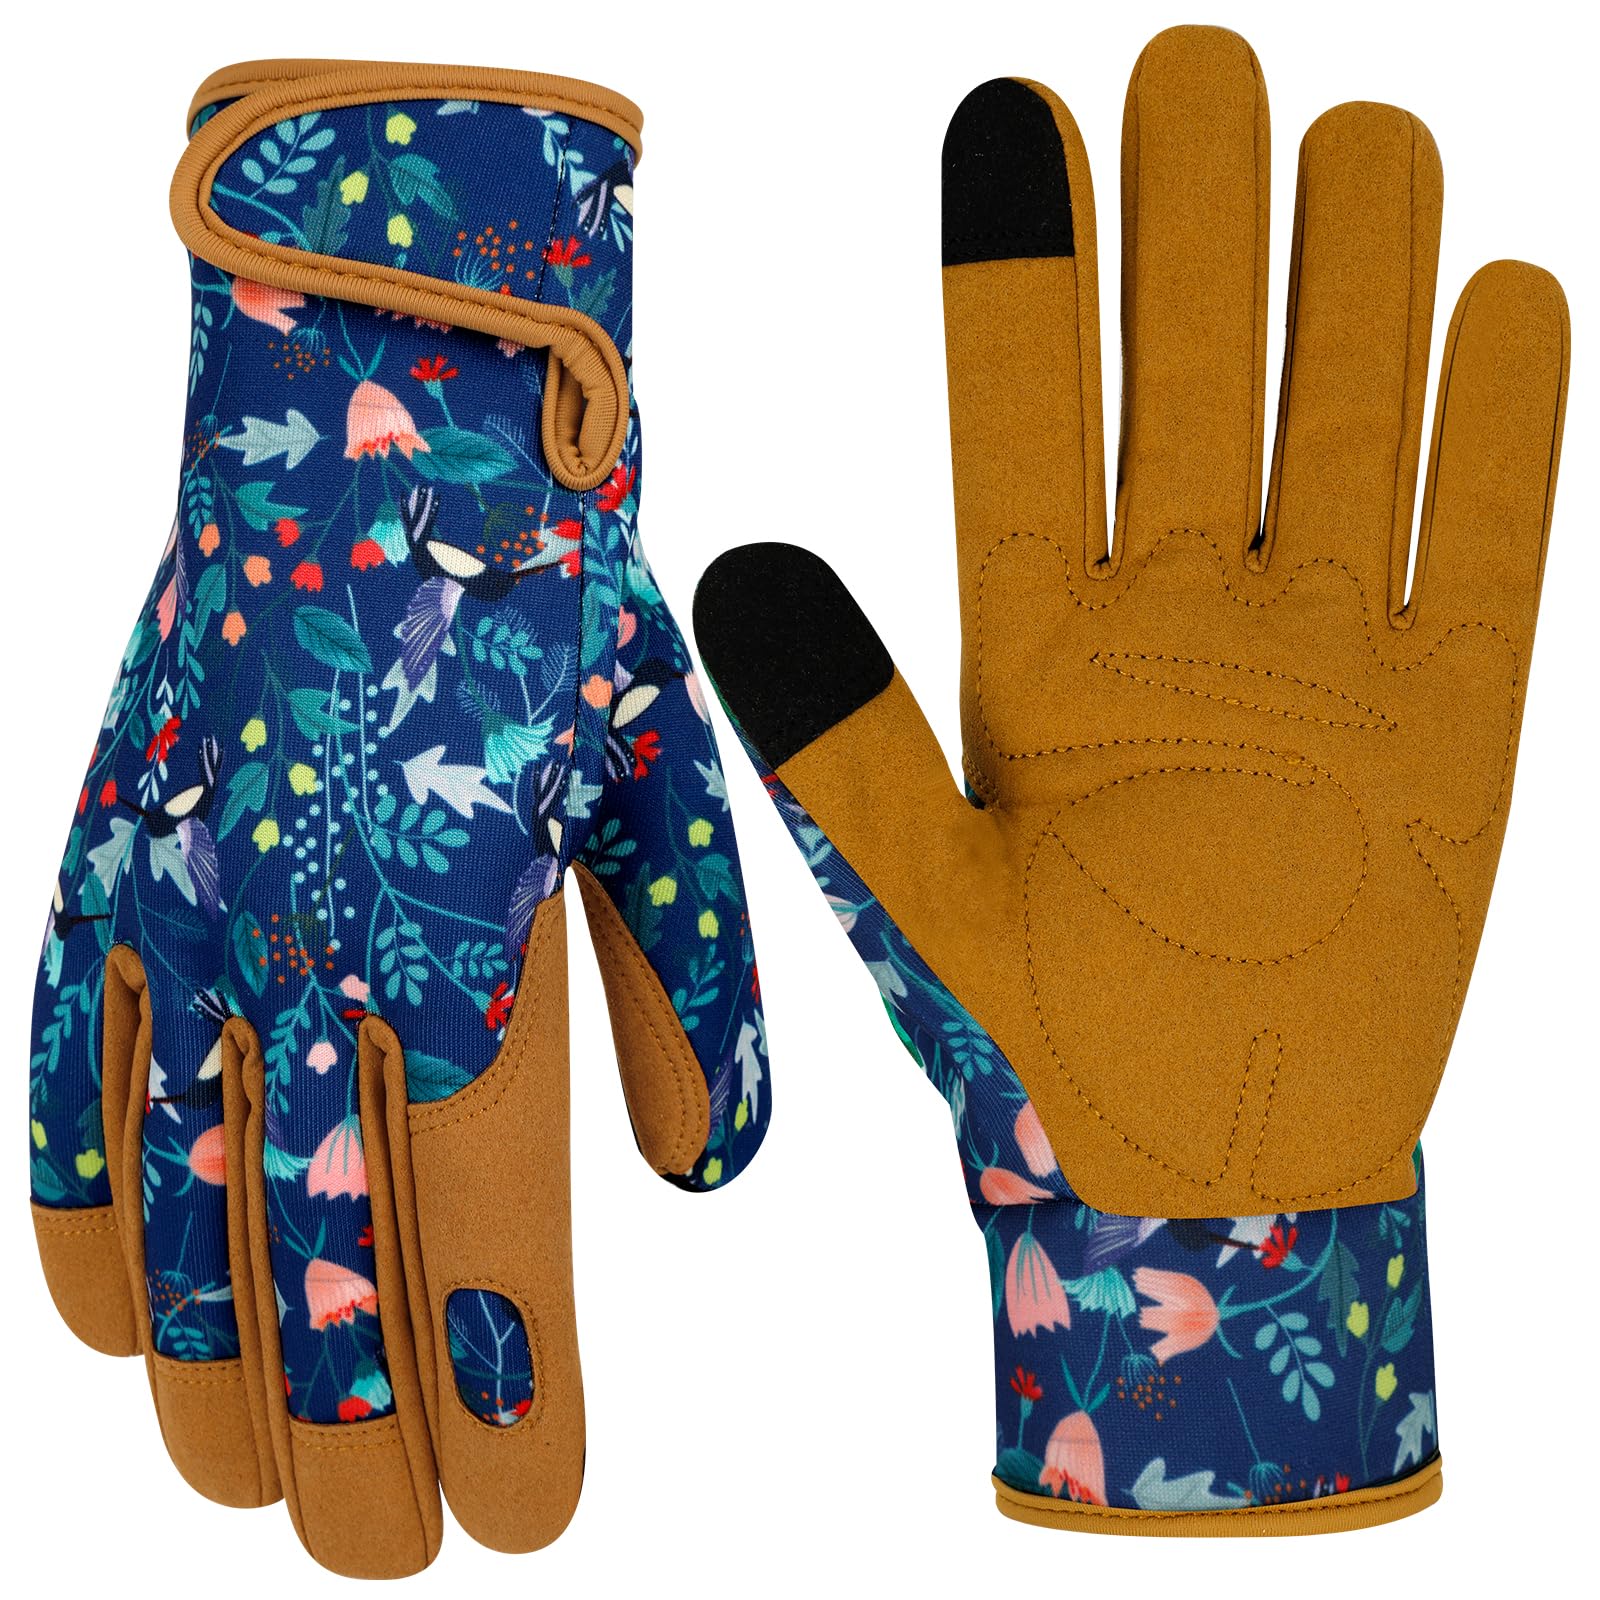 MERTURN Leather Gardening Gloves for Women Garden Gloves Thorn Proof Heavy Duty Gloves Women Gardening Gift Color B